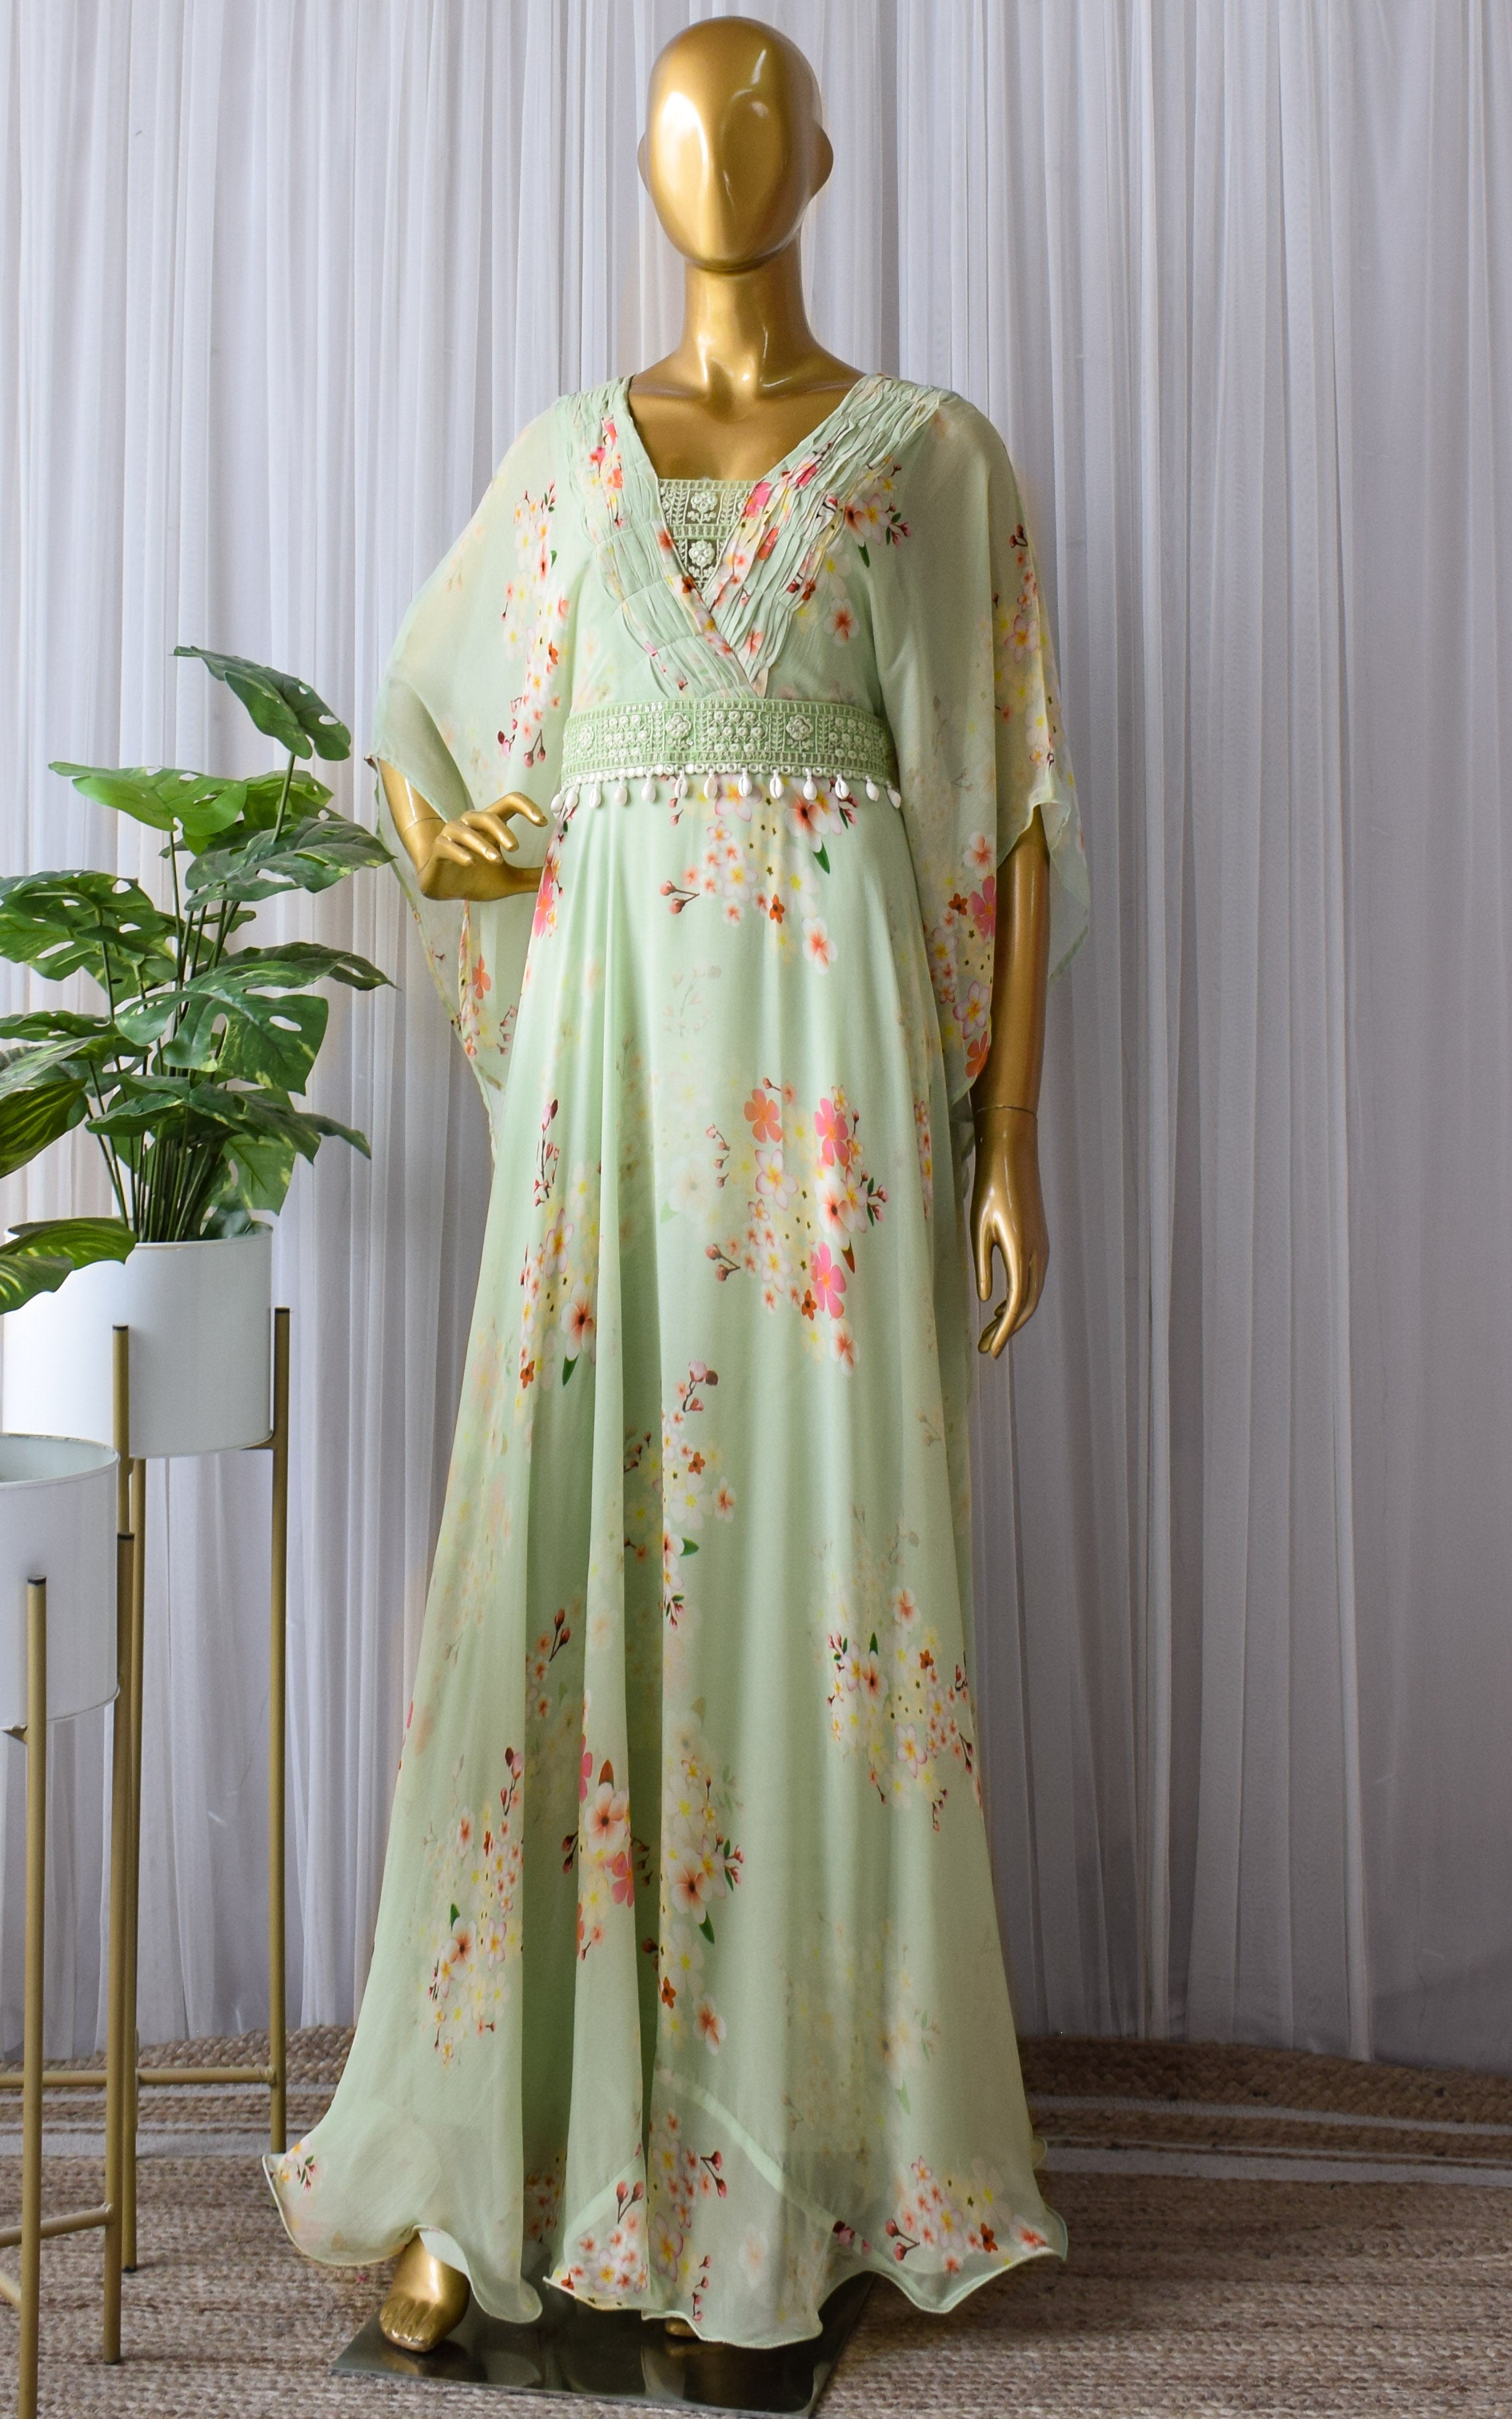 Sage Green Printed Georgette Floral Dress With Mirrorwork Belt